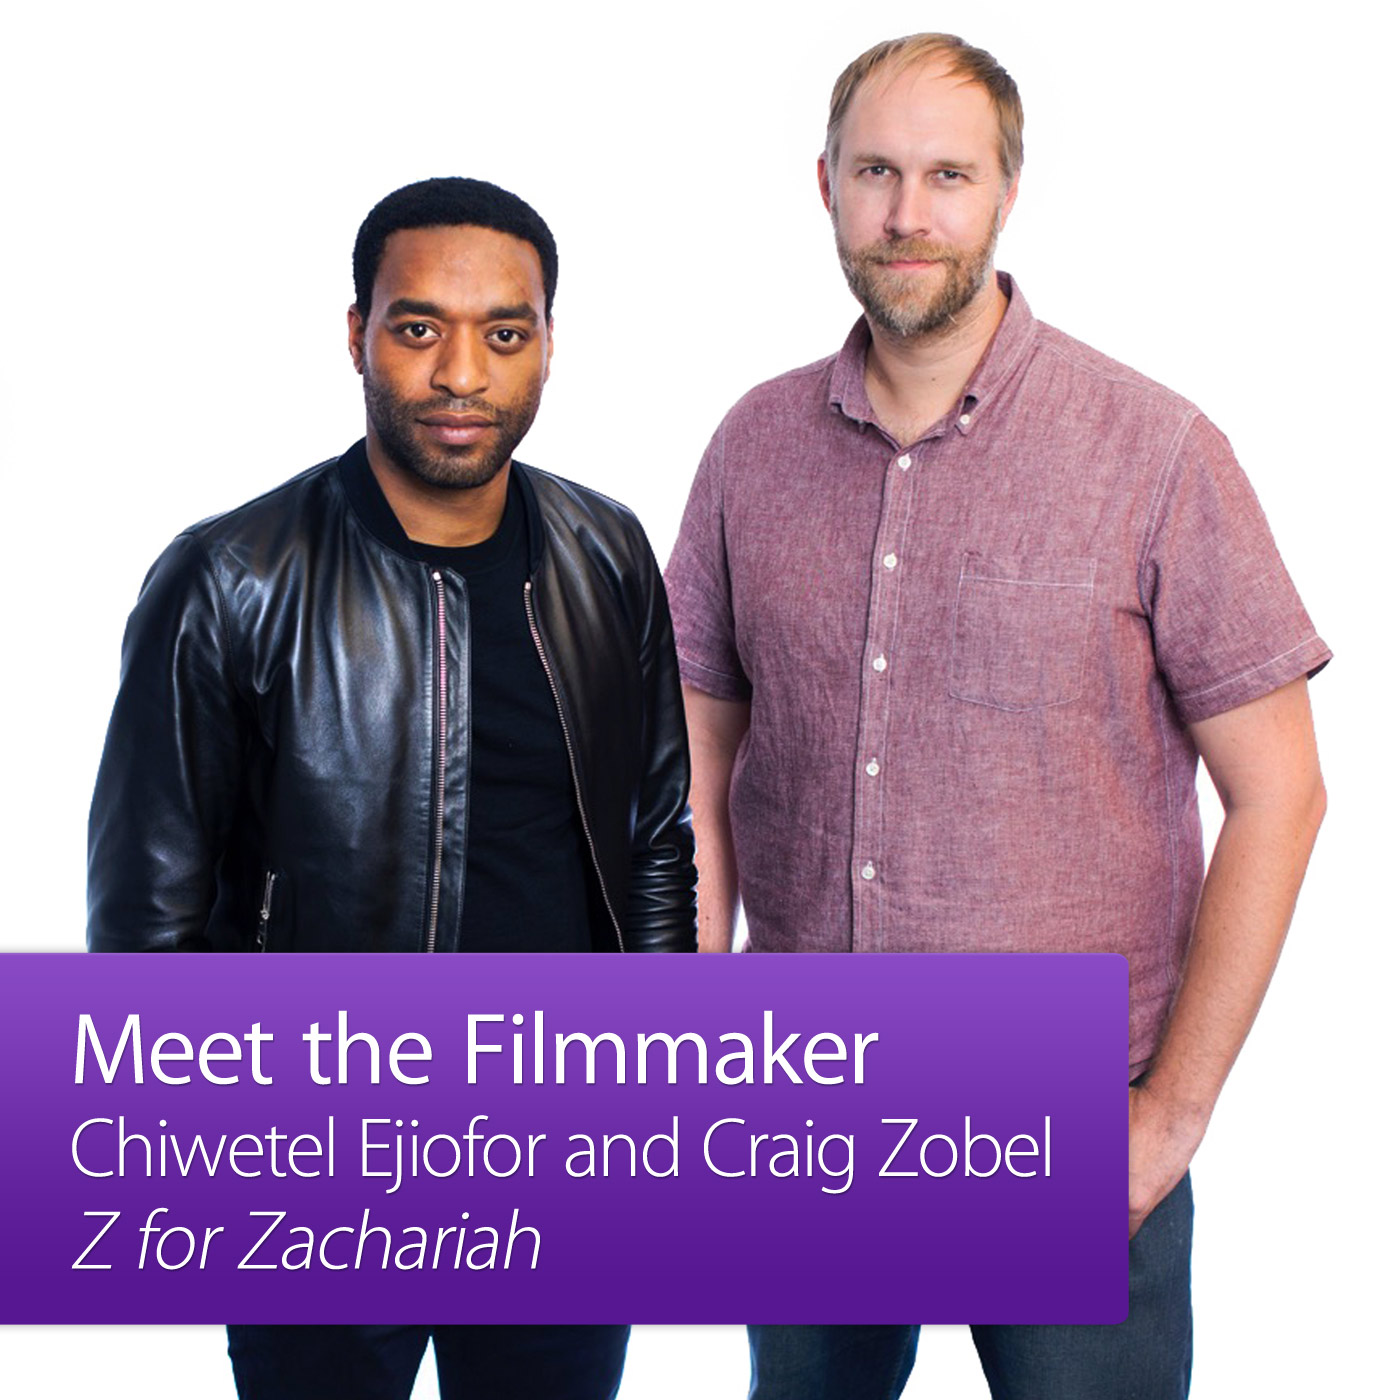 Z for Zachariah: Meet the Filmmaker